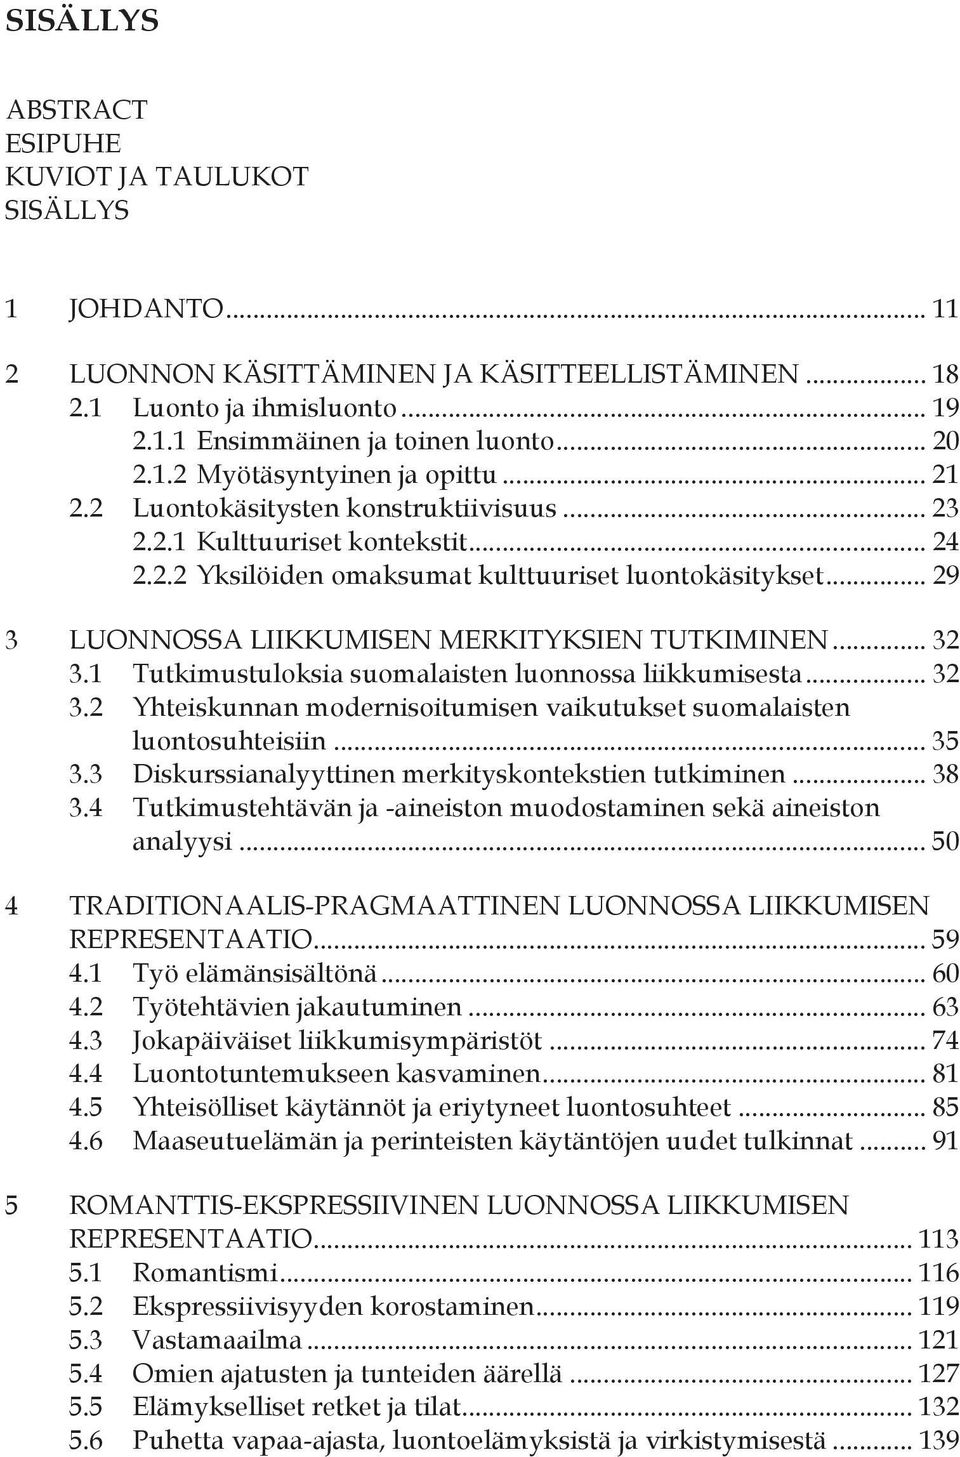 .. 32 3.1 Tutkimustuloksia suomalaisten luonnossa liikkumisesta... 32 3.2 Yhteiskunnan modernisoitumisen vaikutukset suomalaisten luontosuhteisiin... 35 3.